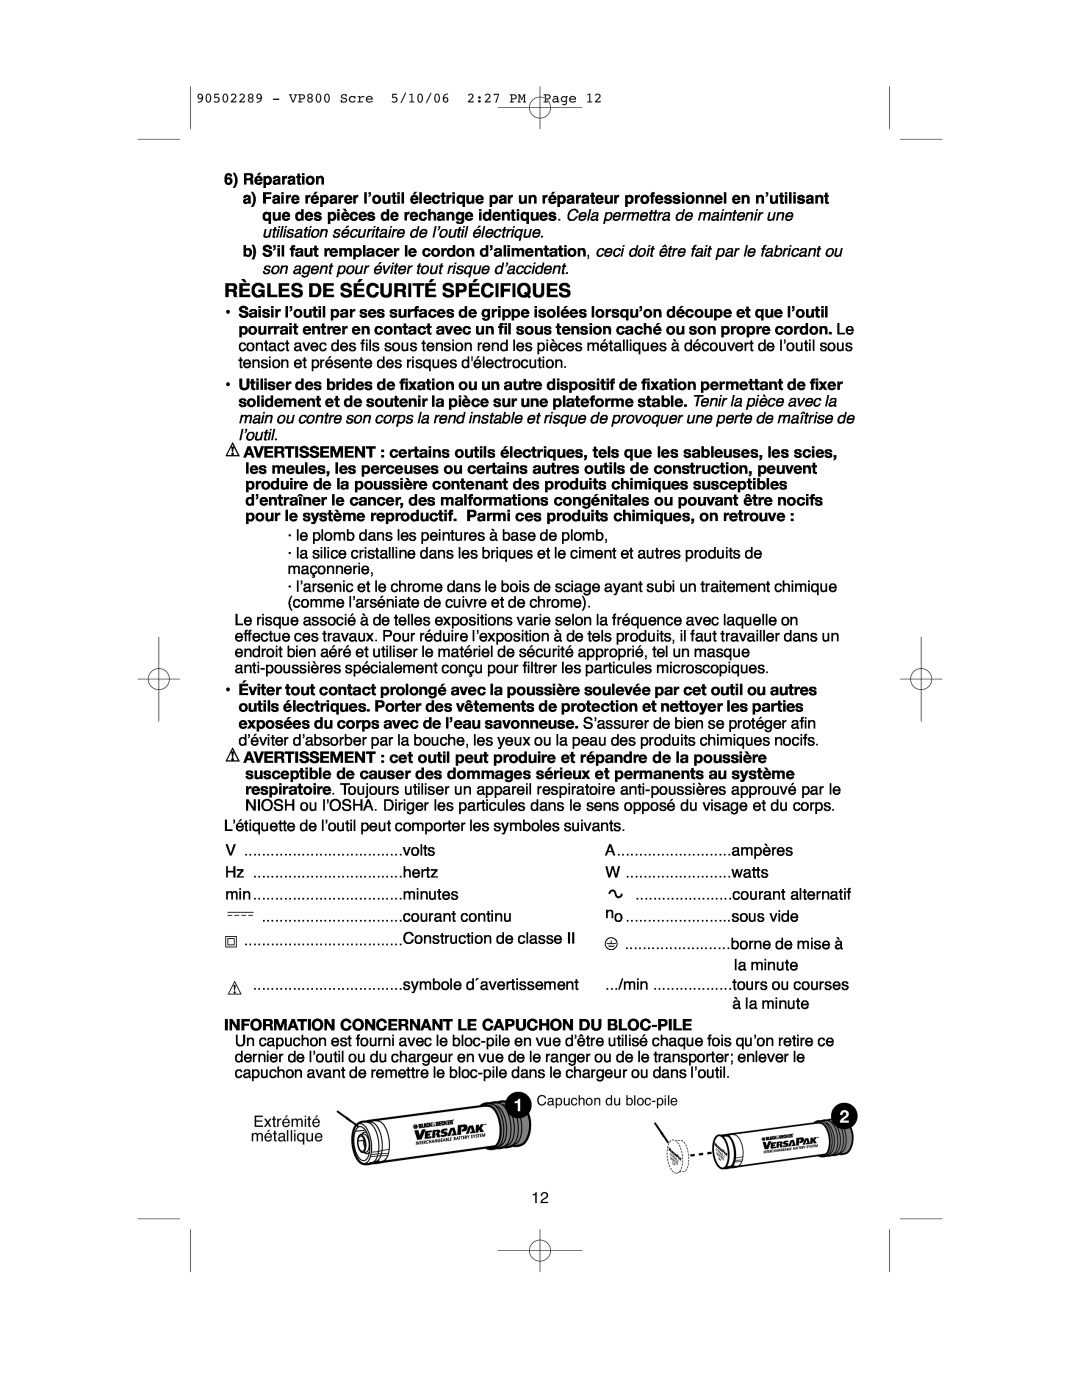 Black & Decker VP800 instruction manual Règles De Sécurité Spécifiques, Information Concernant Le Capuchon Du Bloc-Pile 